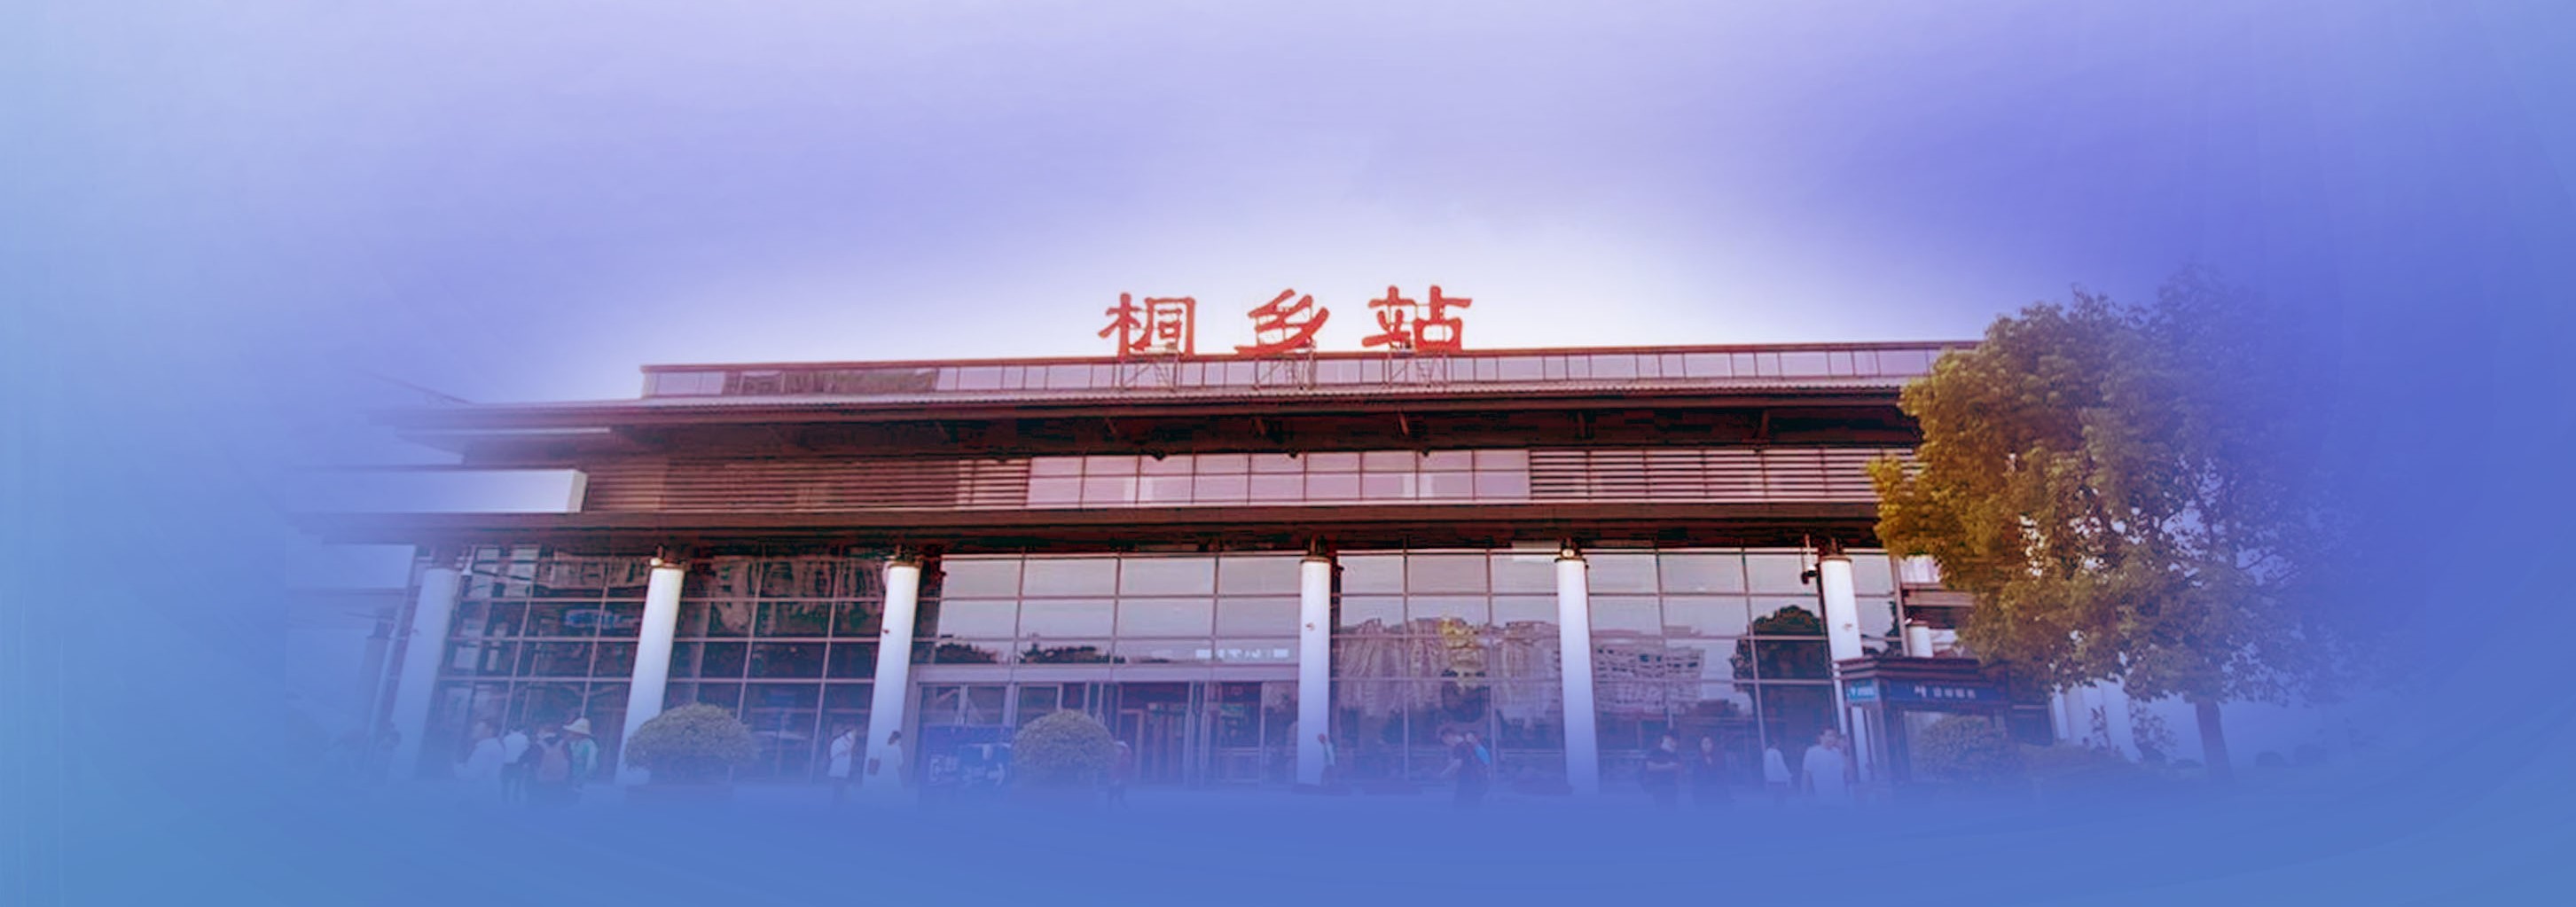 桐乡站站台图片